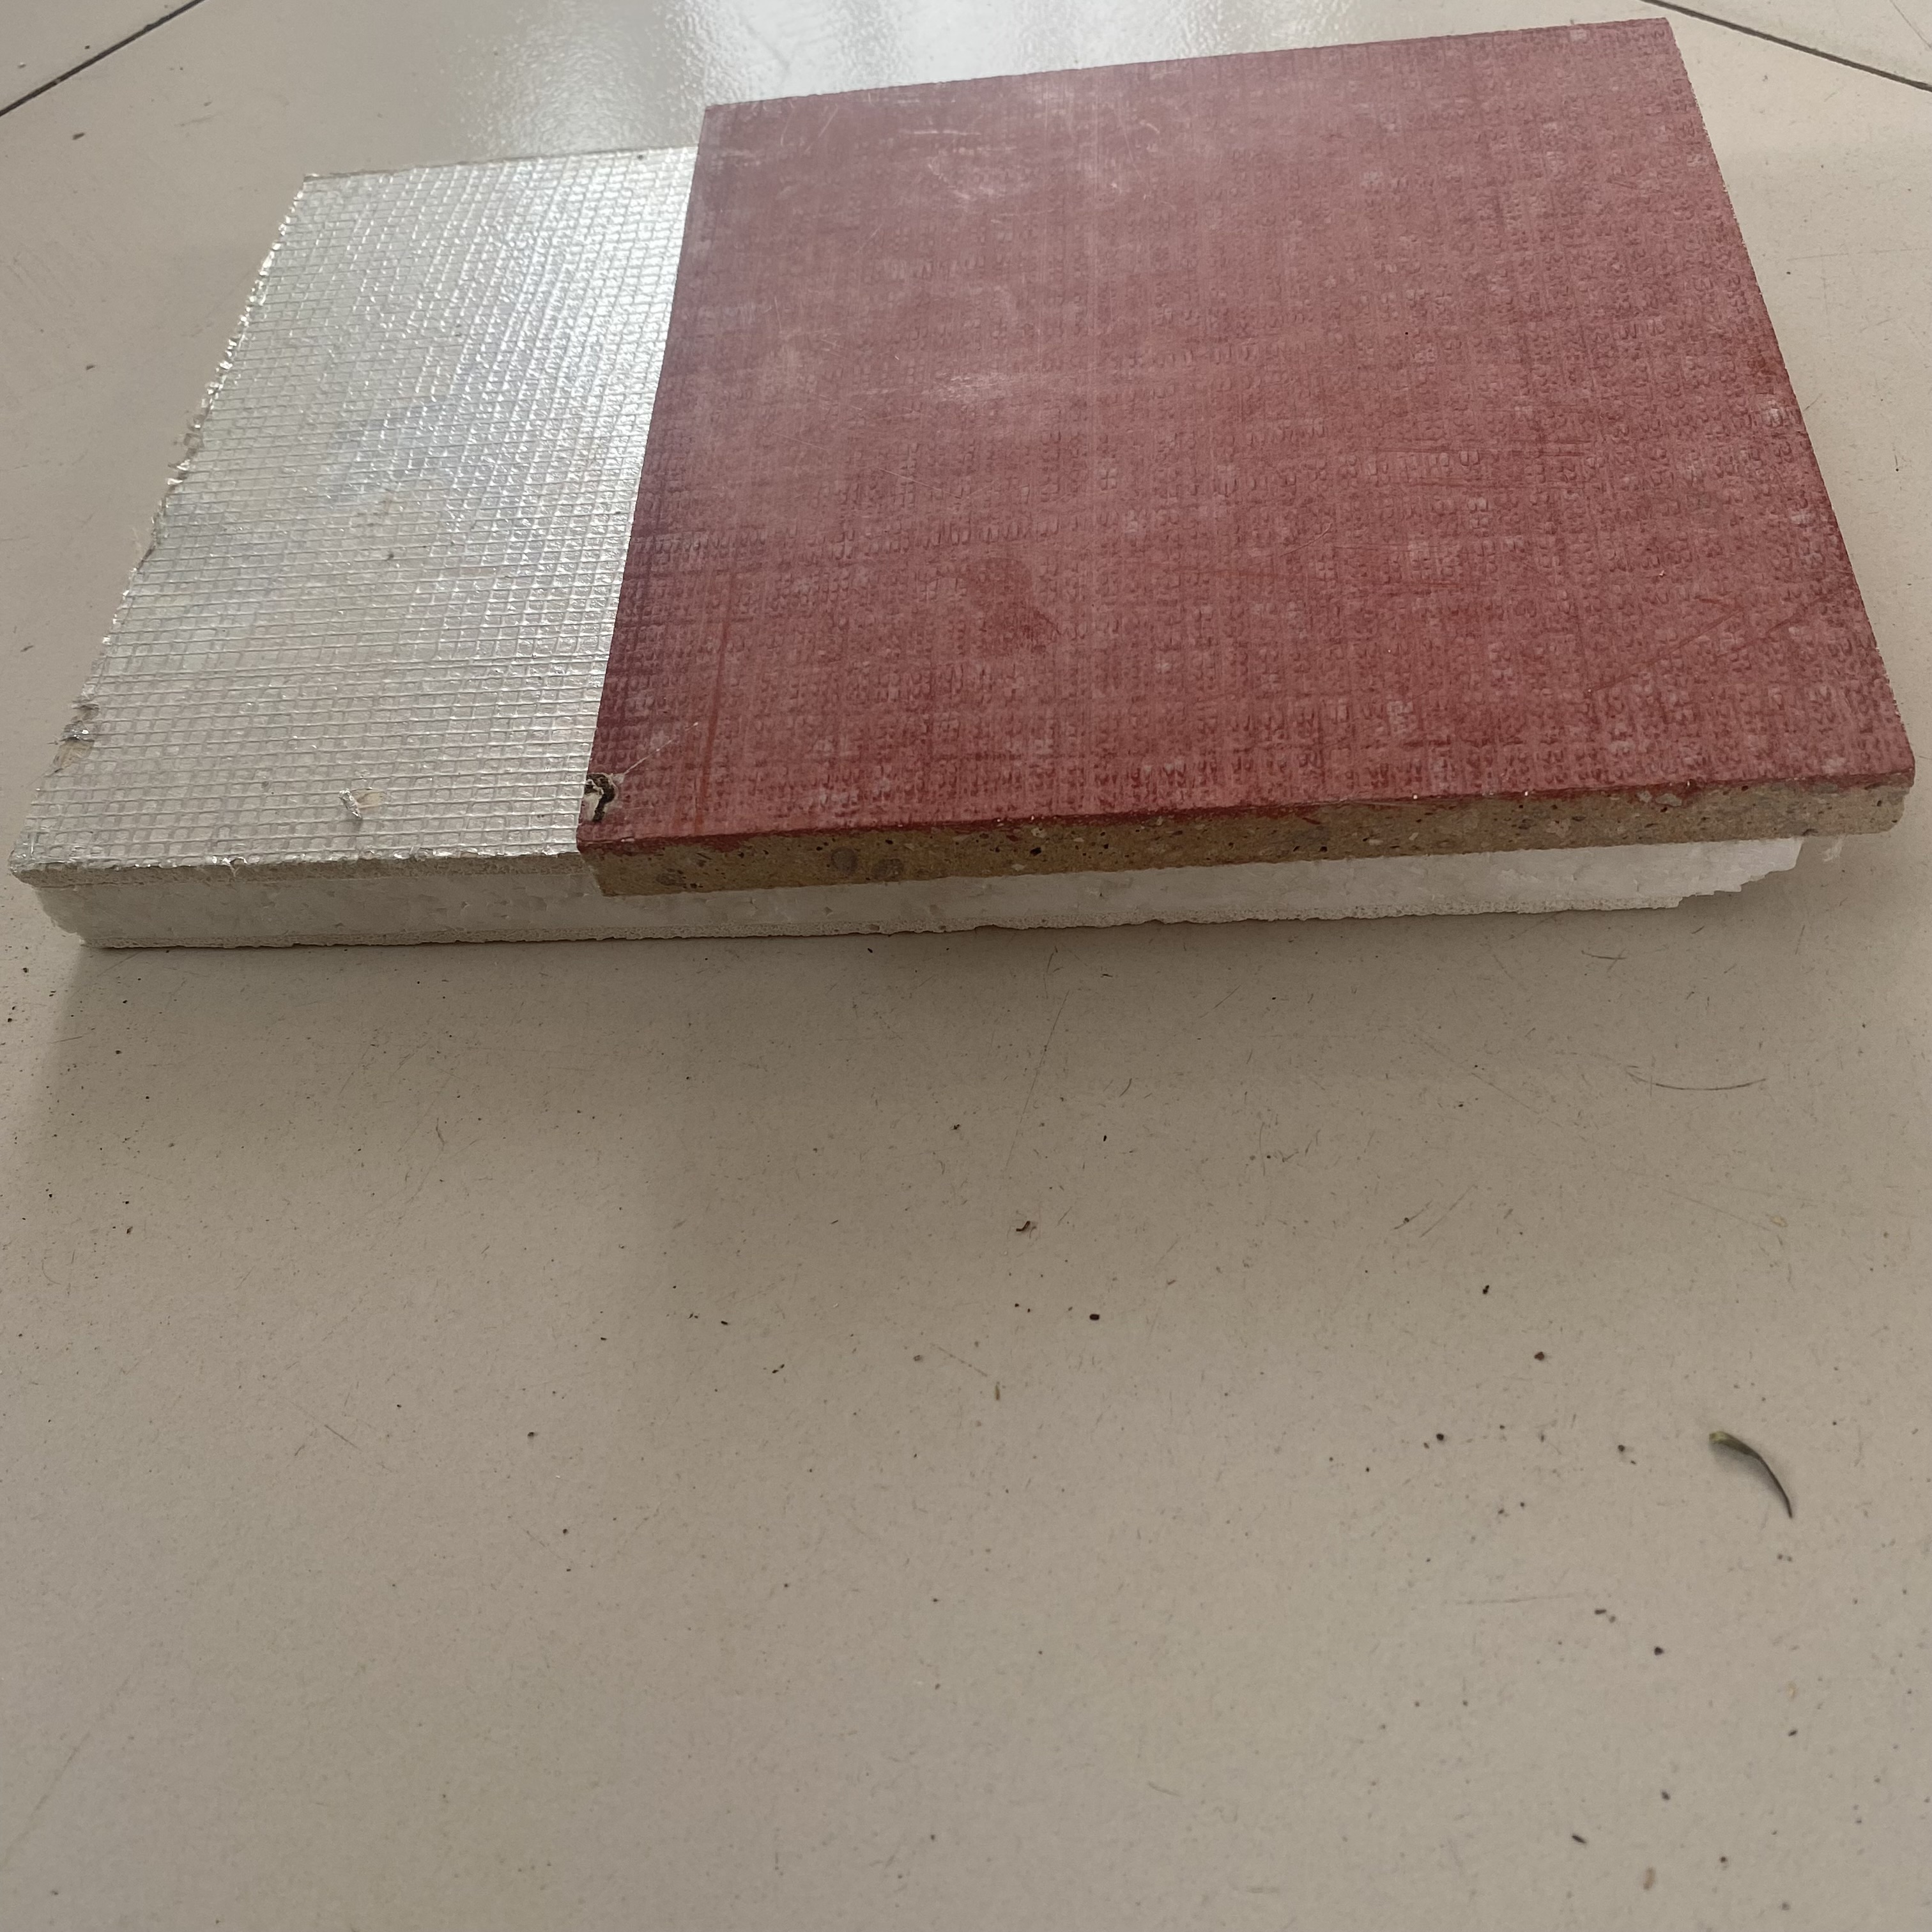 嘉禾jiahe-10外墙保温板免拆一体板设备生产线板材成型机小型设备建筑复合保温